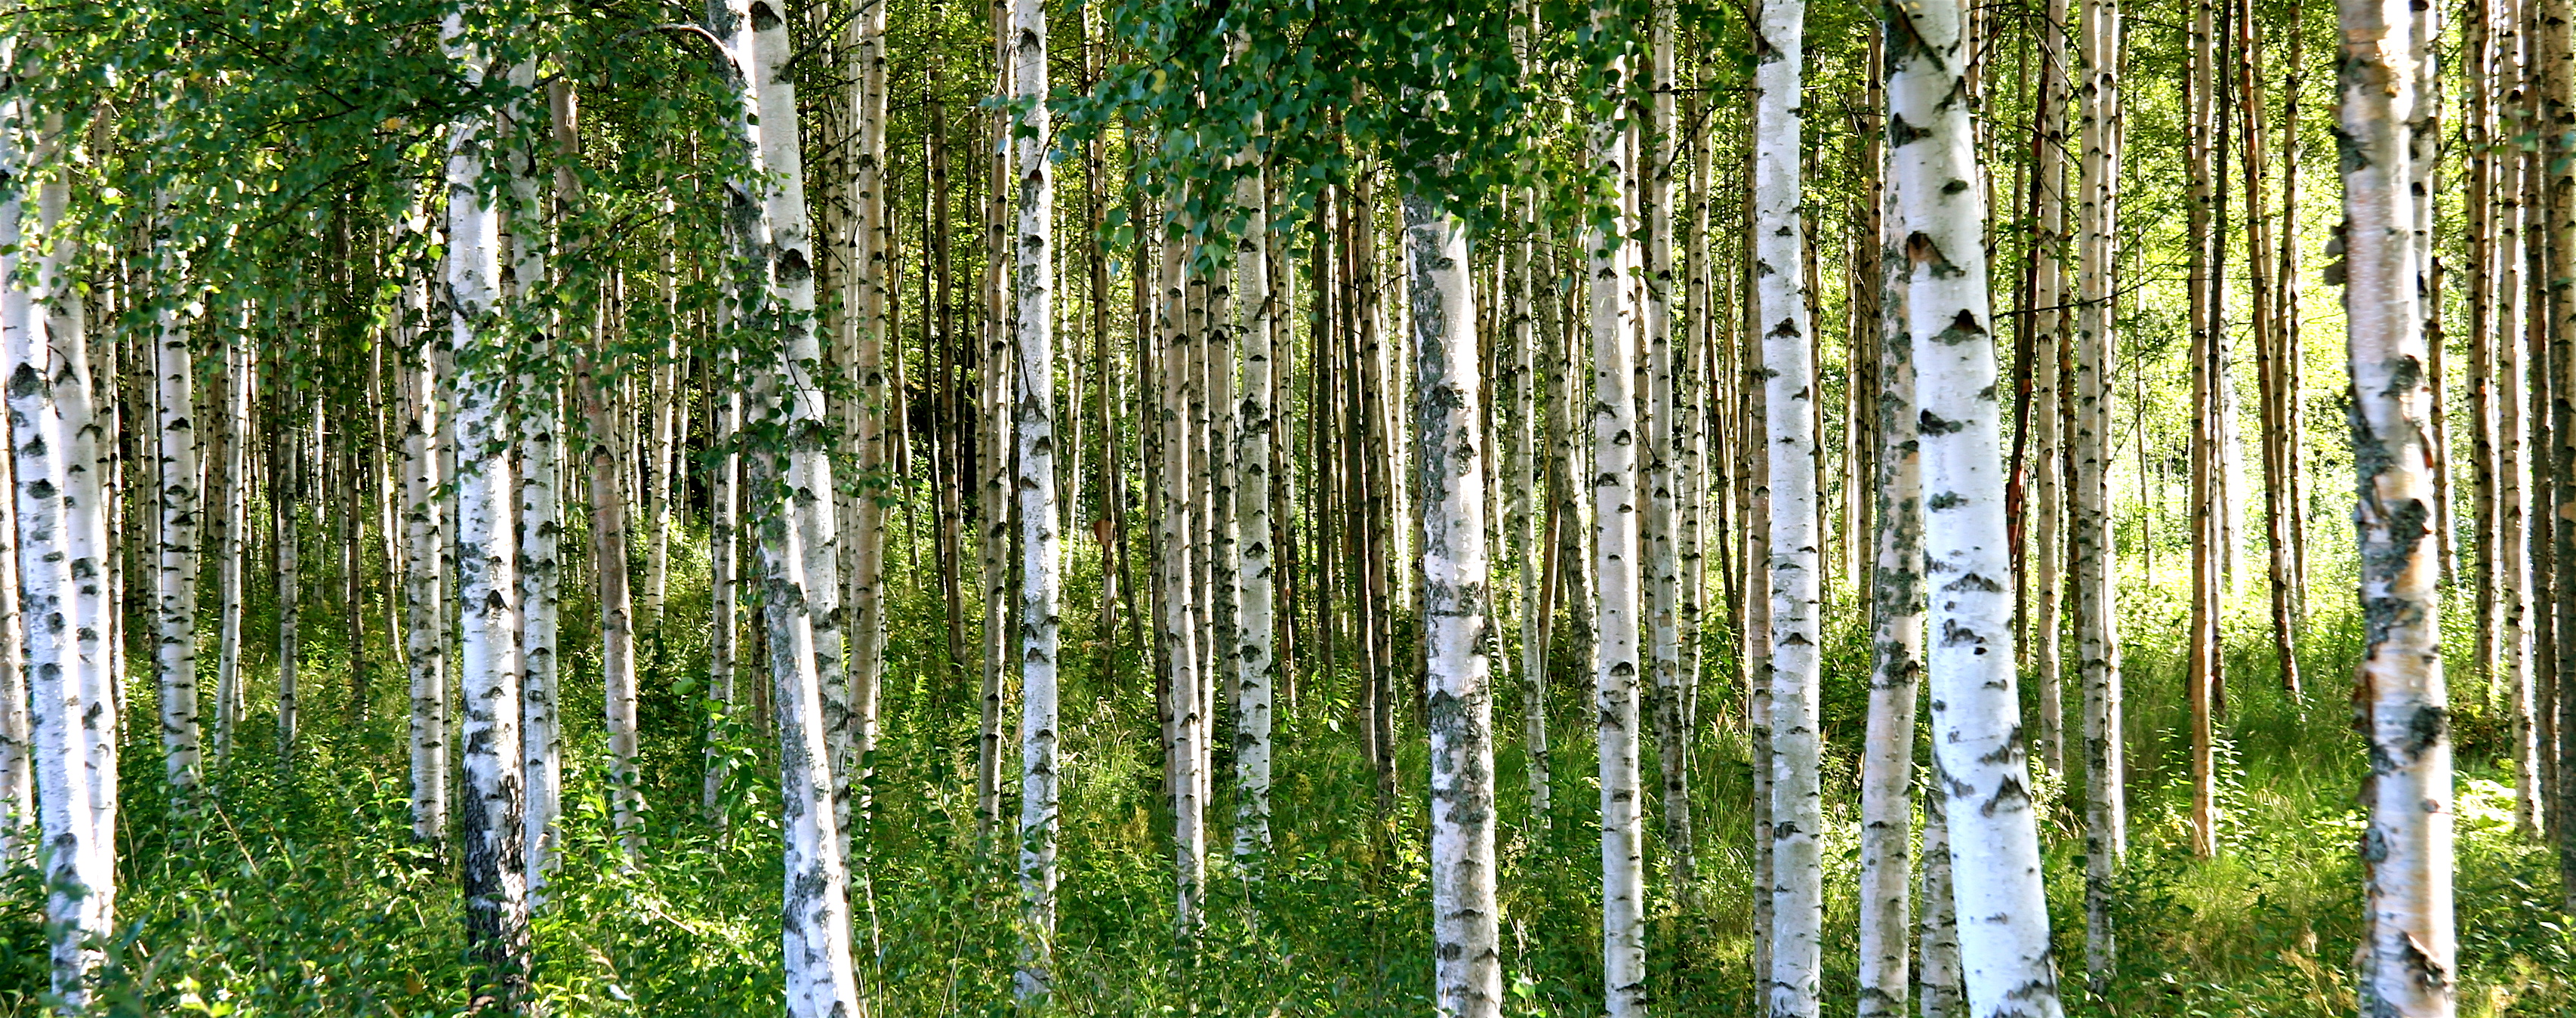 Birch-tree-forest-Flickr